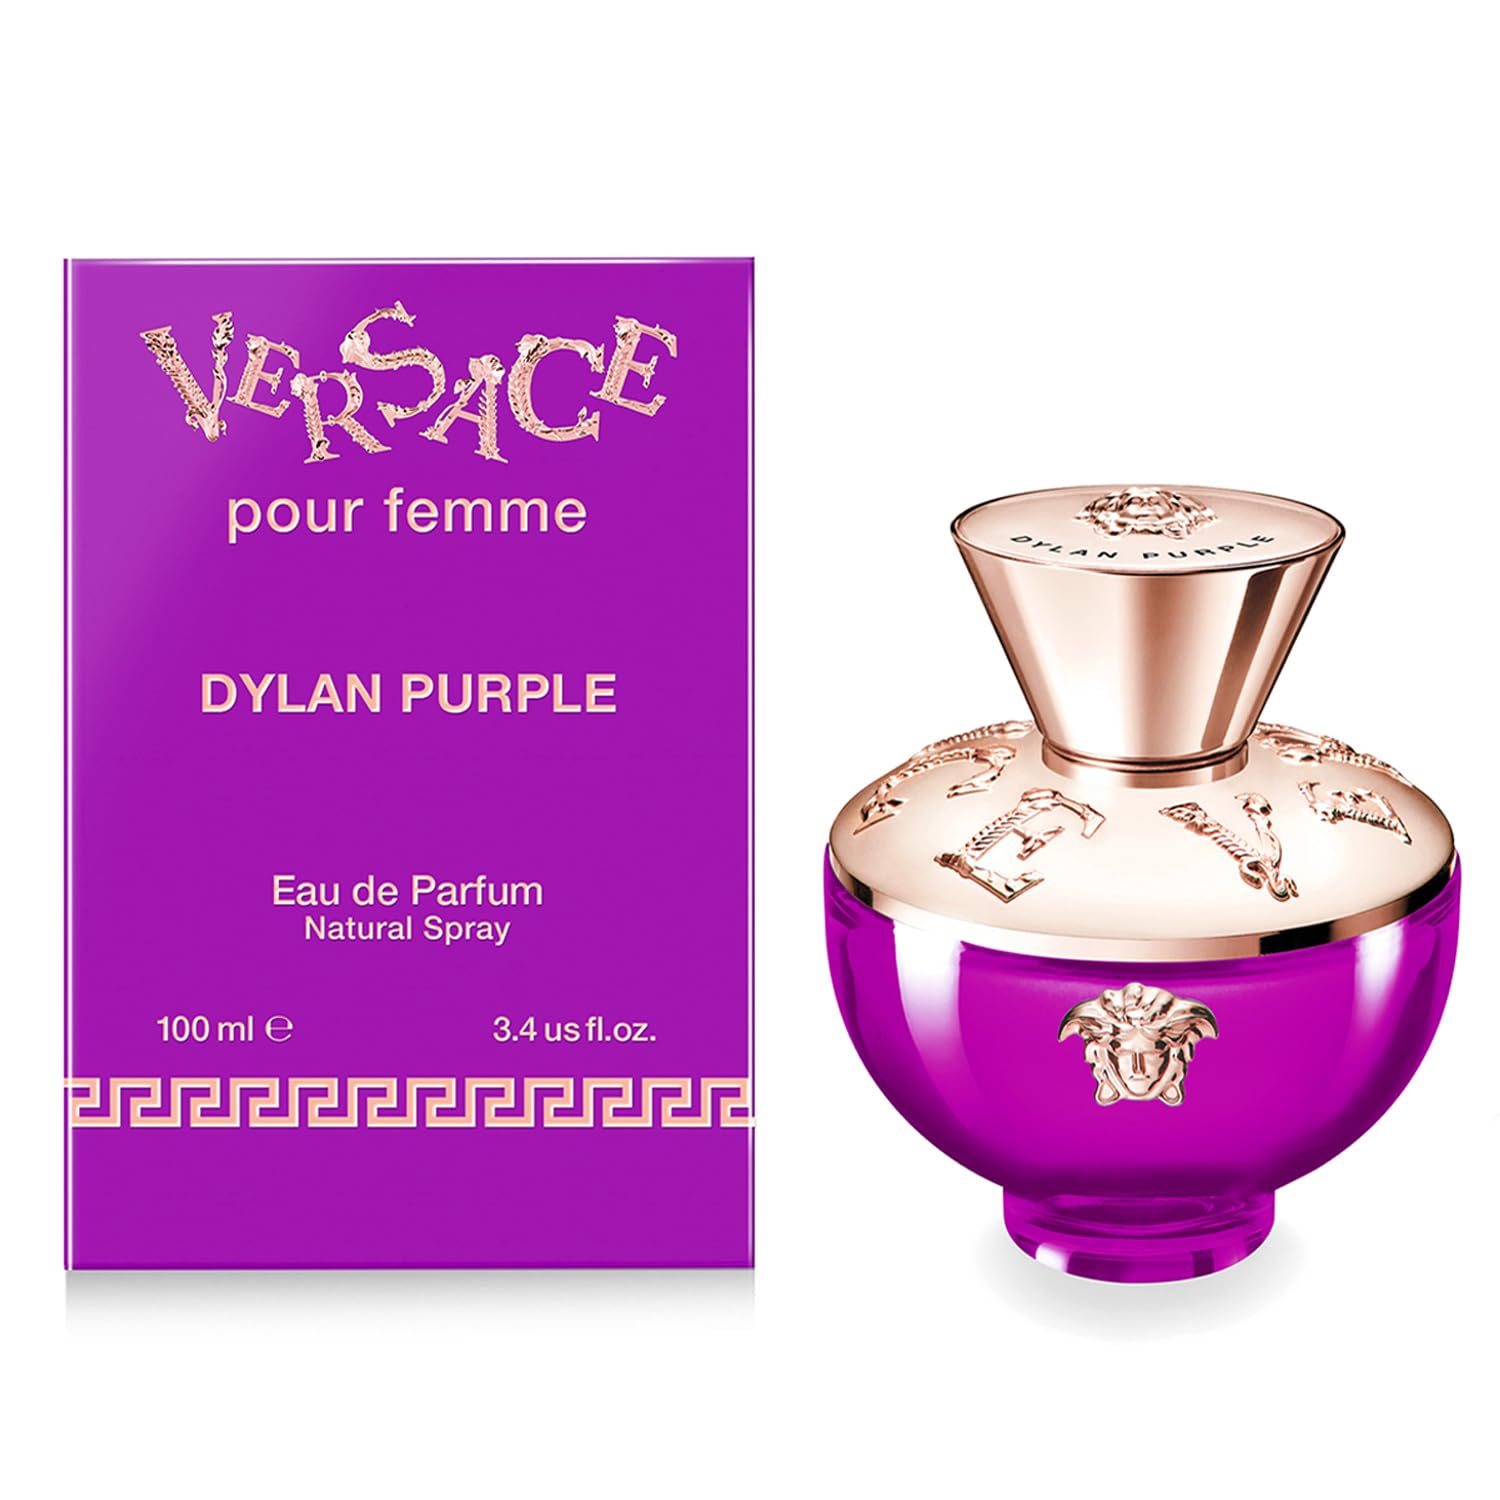 Versace Dylan Purple ml Women – oz Parfum Eau de Rafaelos 3.4 100 Femme Pour